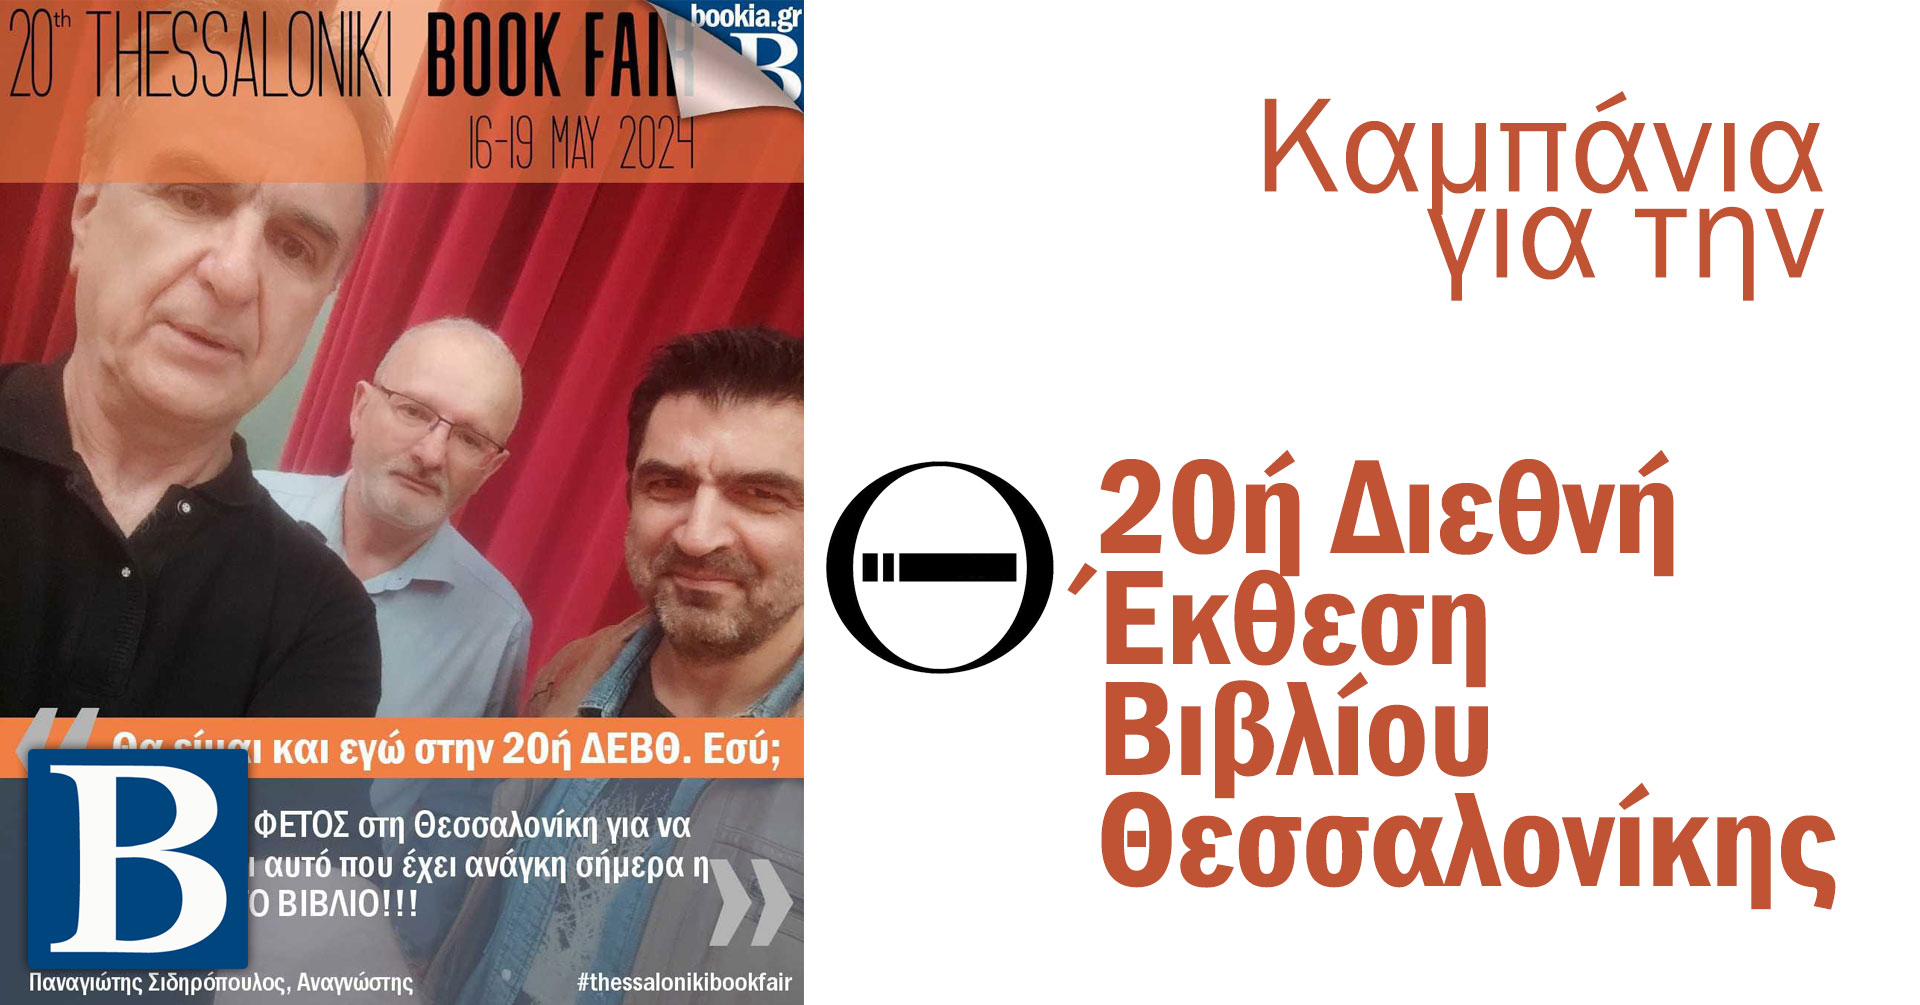 Καμπάνια προώθησης της 20ής Διεθνούς Έκθεσης Βιβλίου Θεσσαλονίκης